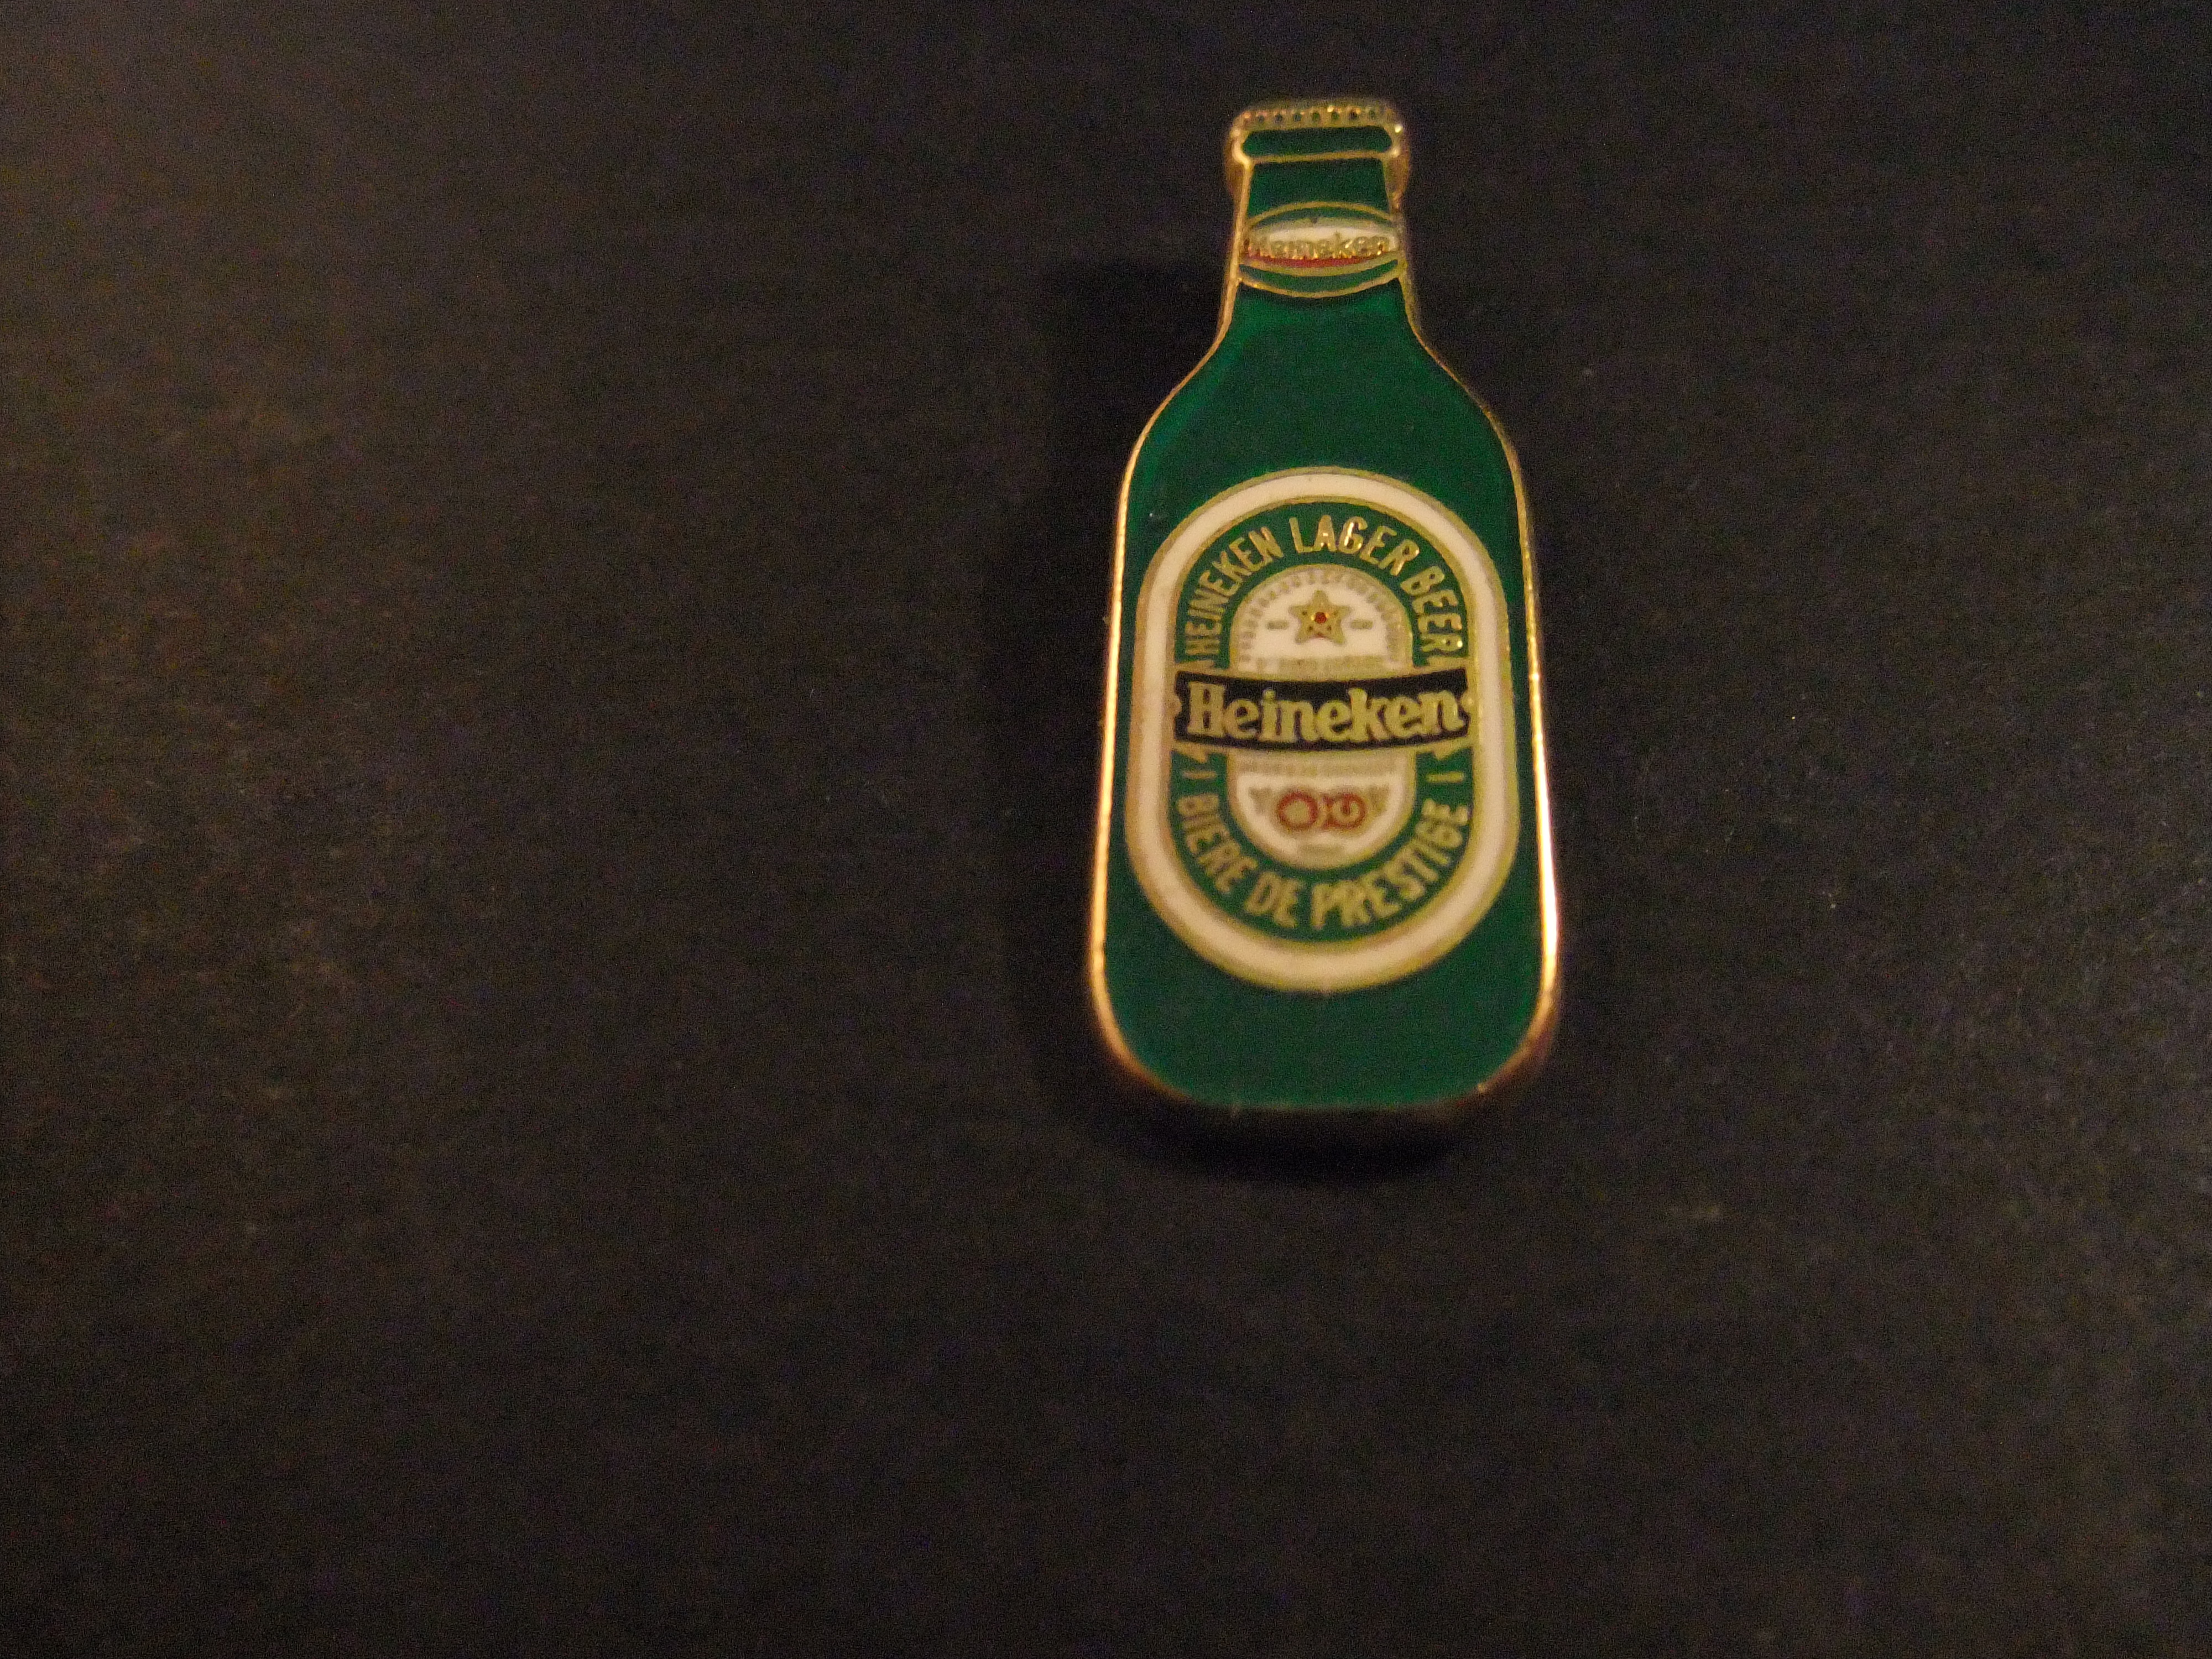 Heineken lager bier (bierflesje)